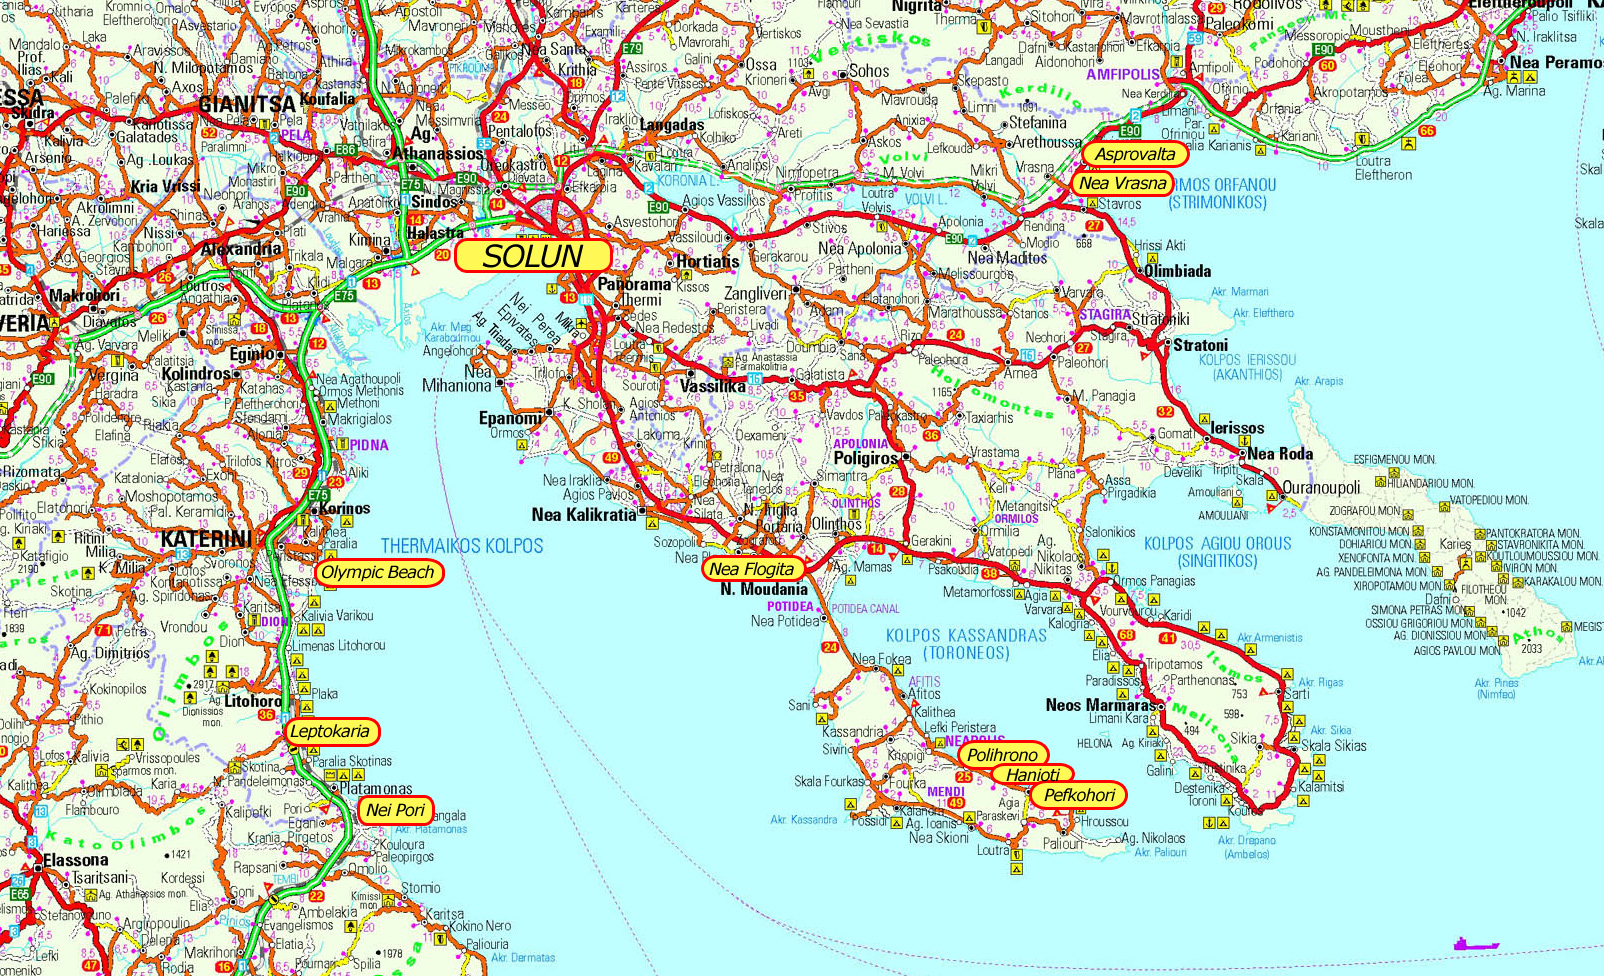 turisticka karta grcke Američke studije u Grčkoj | Lignjoslav's Blog turisticka karta grcke